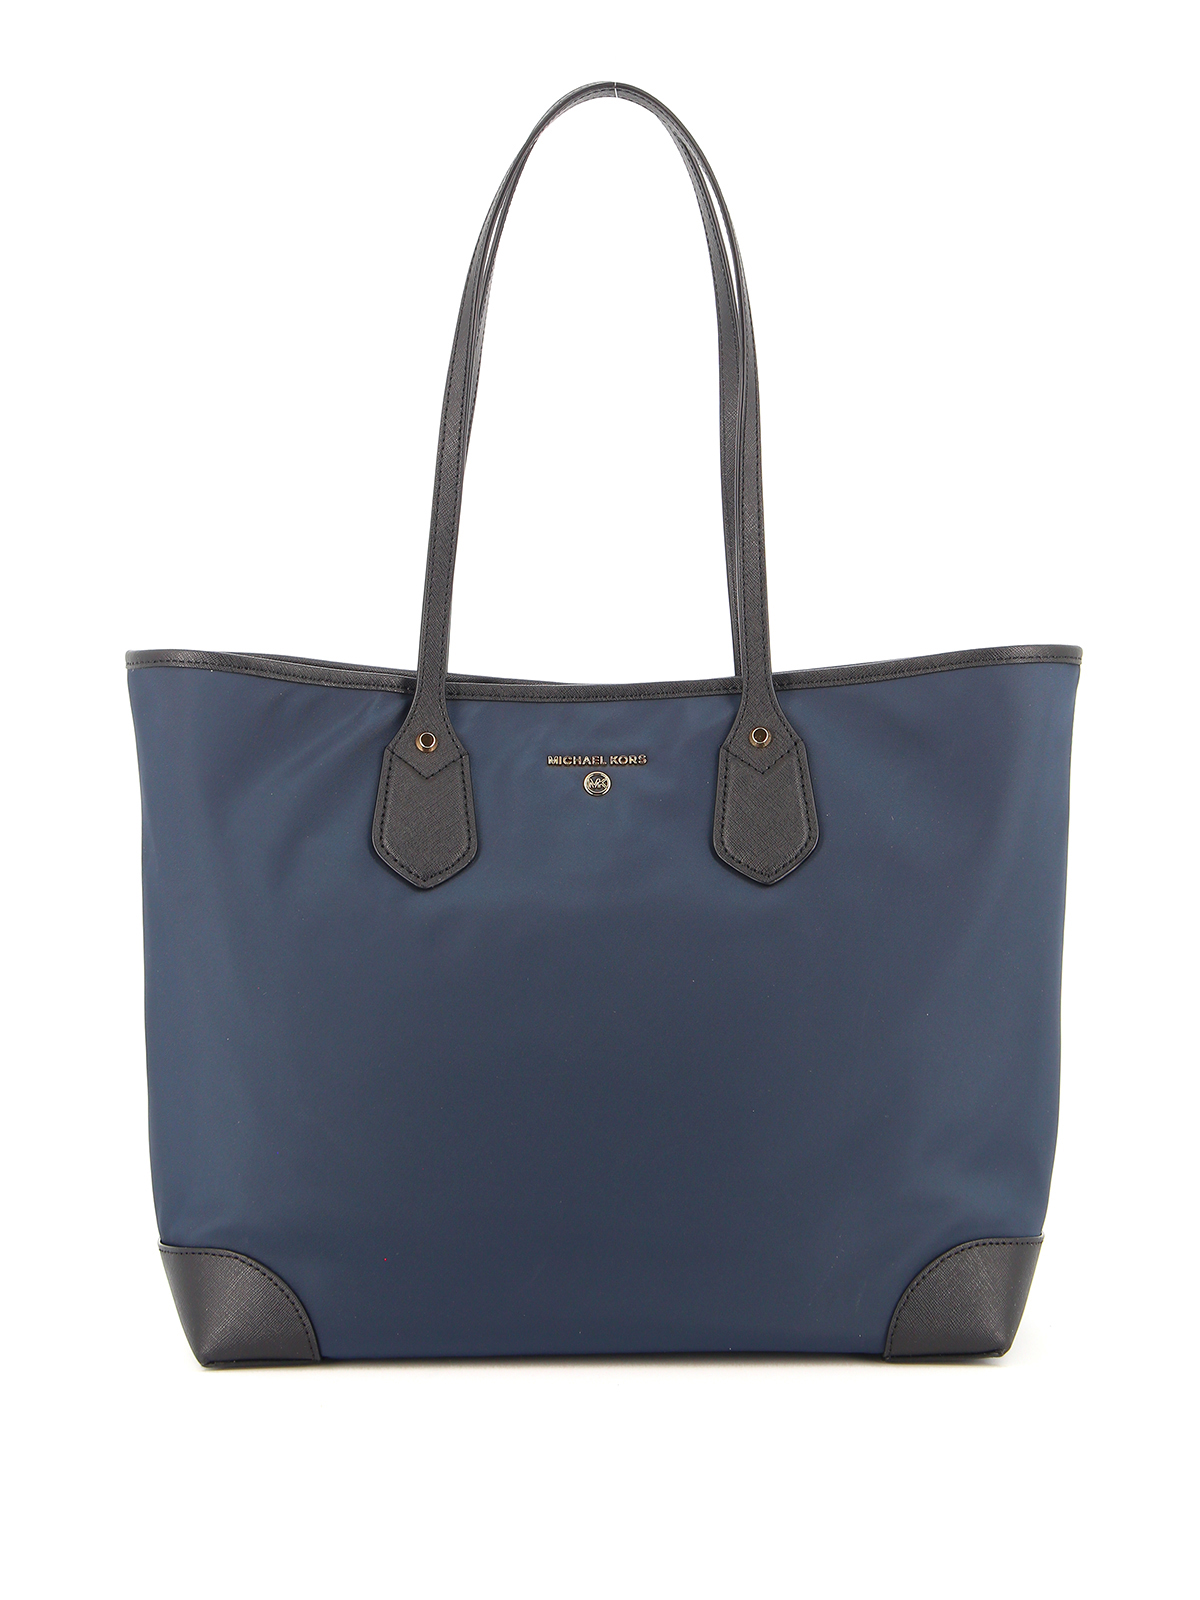 Michael Kors - Eva large nylon blue tote bag - totes bags - 30H9GV0T3C407